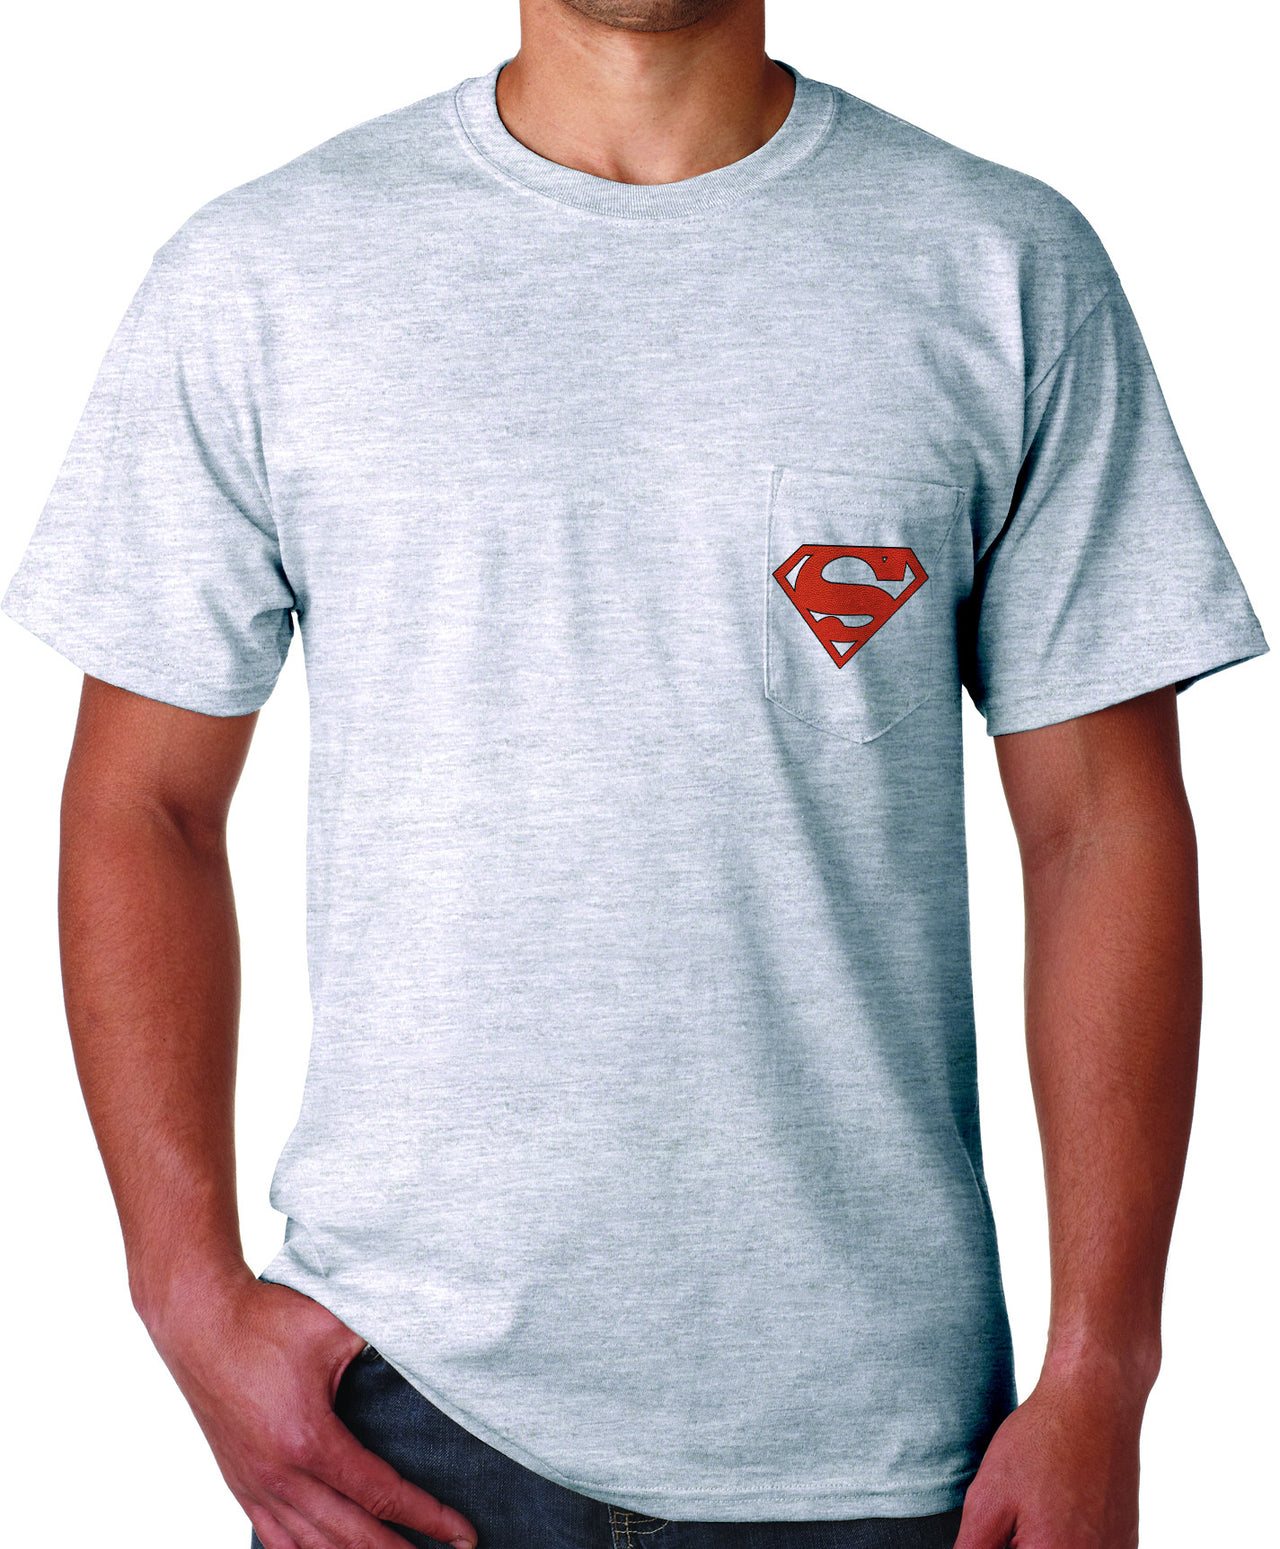 Superman 'Play like' Basketball Logo on Ash Grey Colored Pocket Tshirt - TshirtNow.net - 2